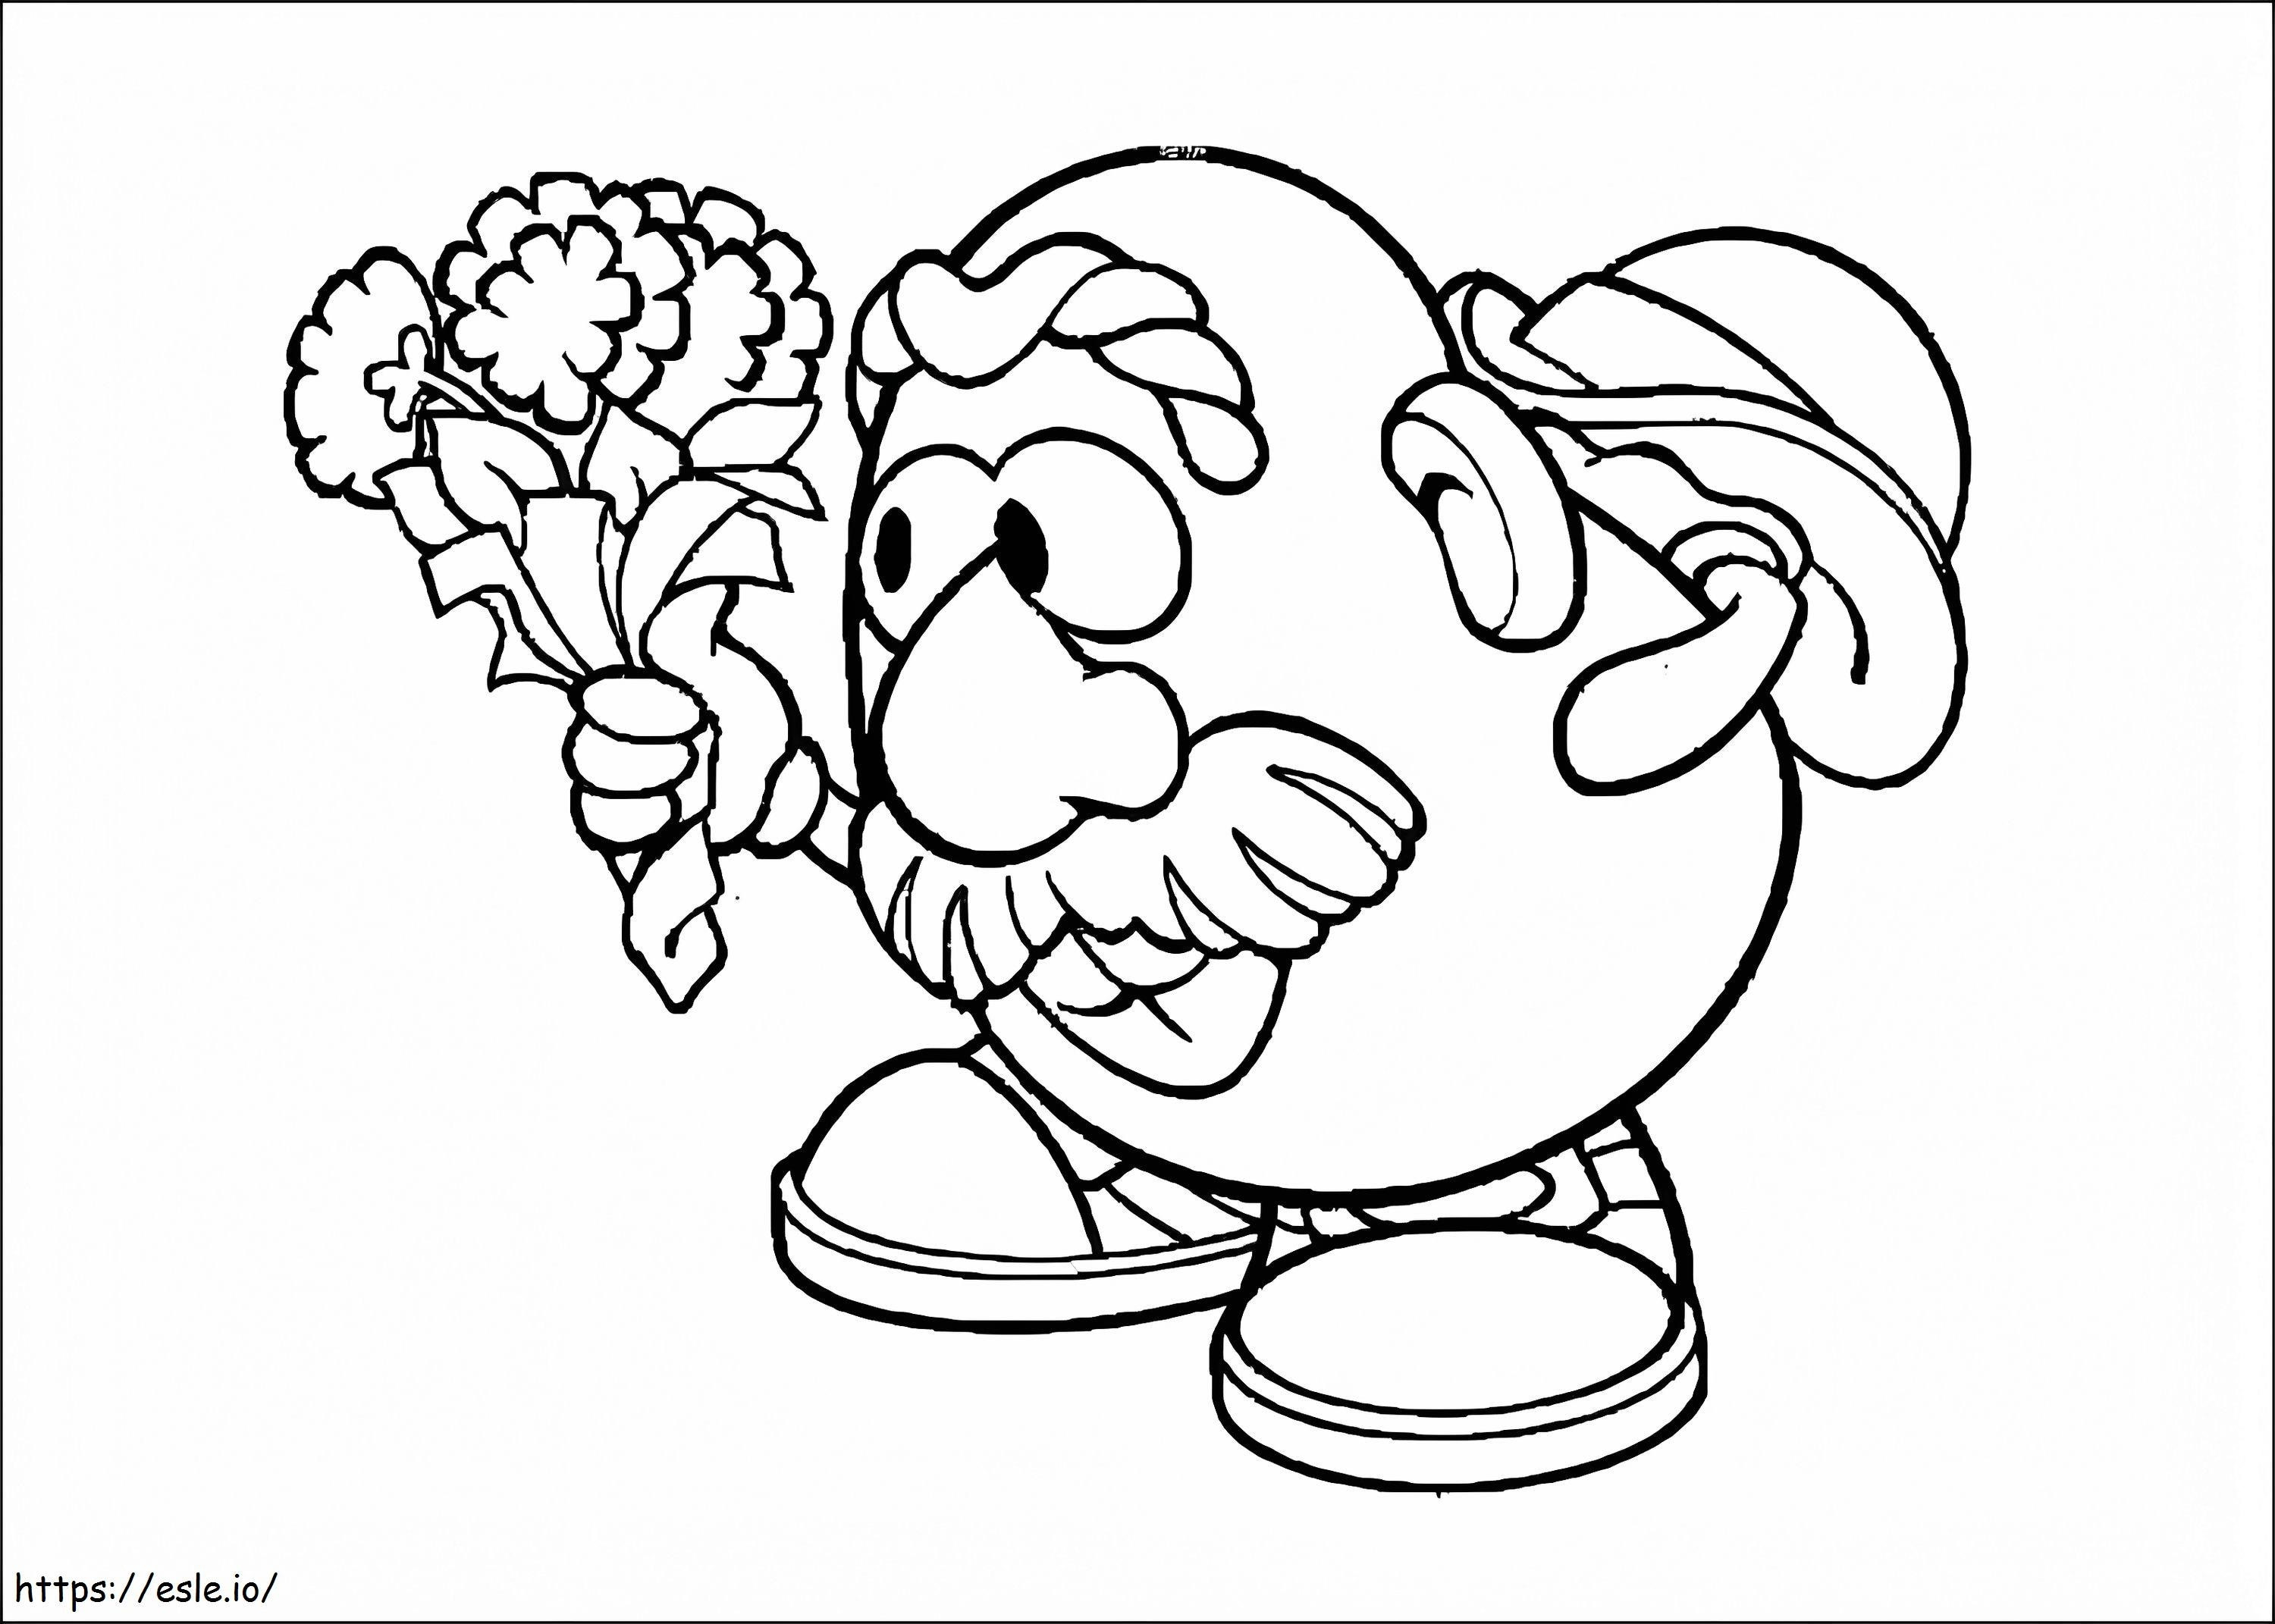 Herr Kartoffelkopf mit Blumen ausmalbilder